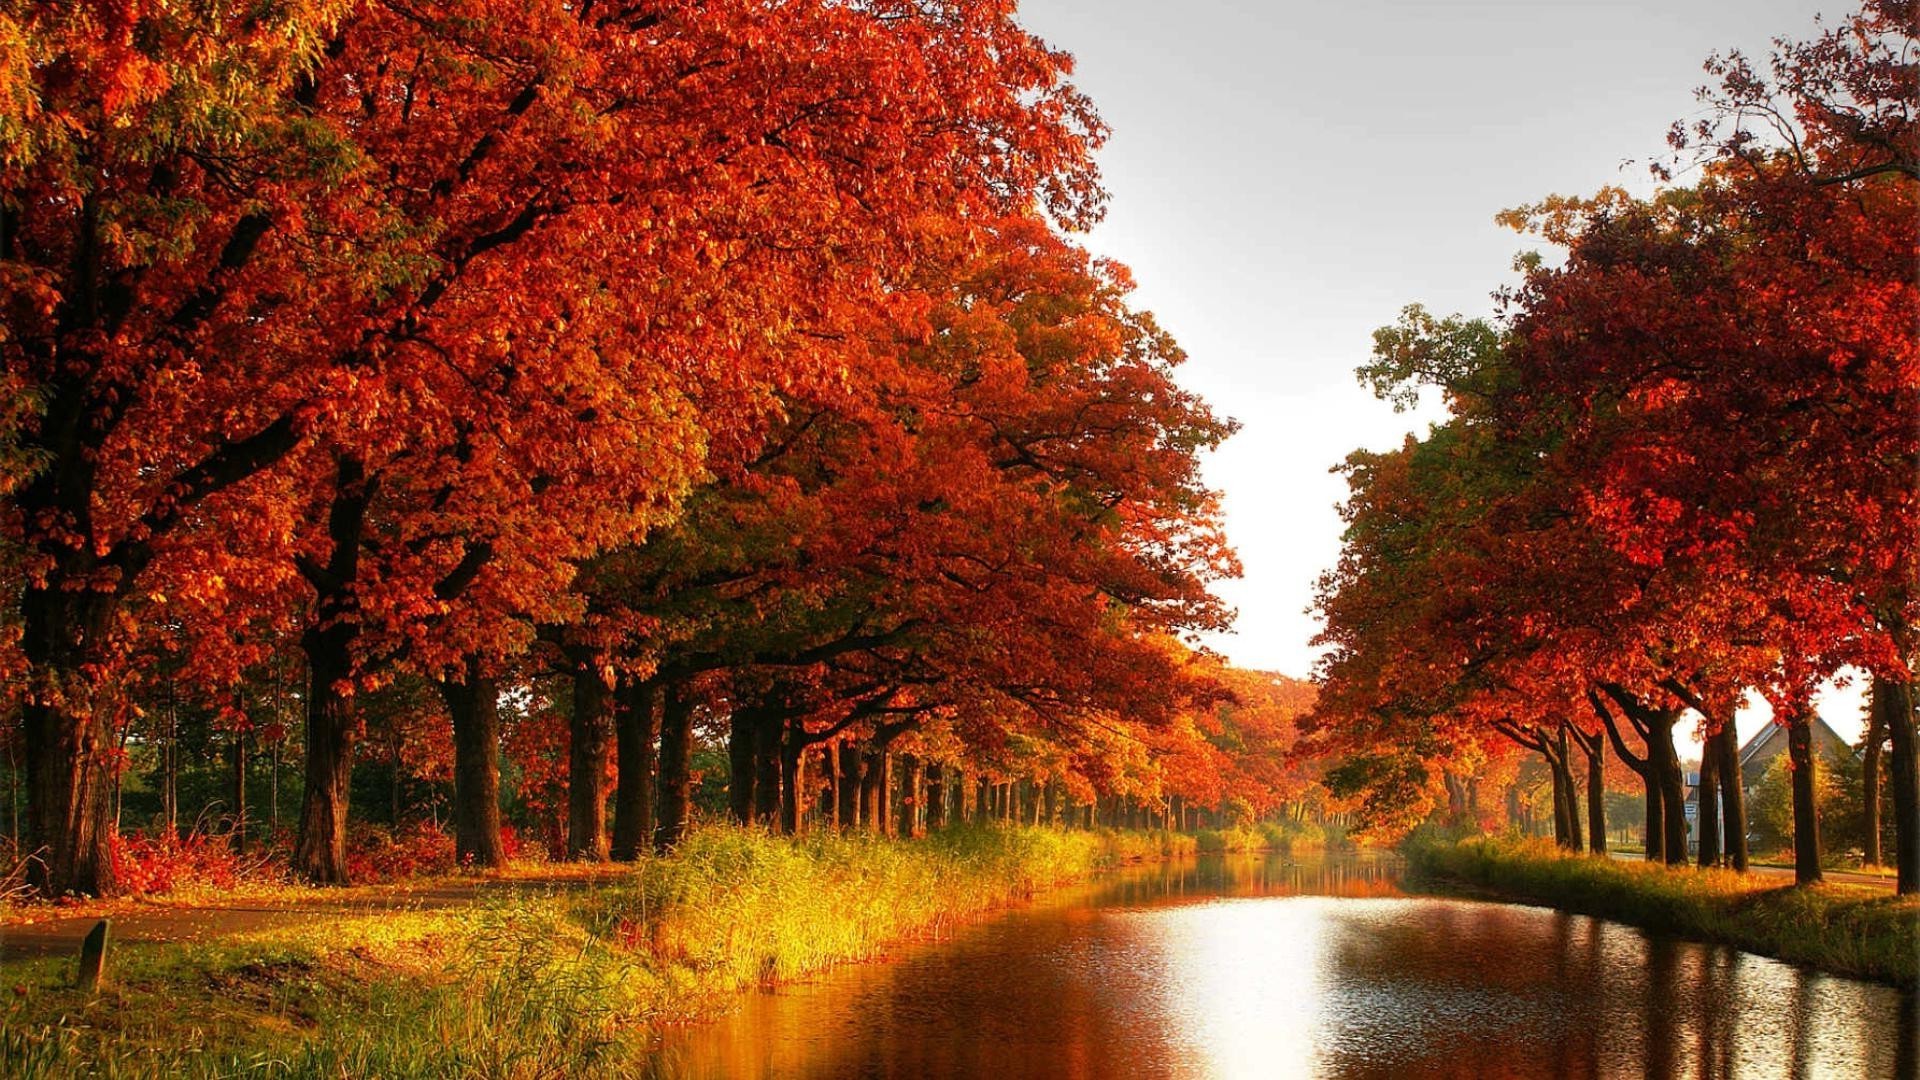 реки пруды и ручьи прудов и ручьев осень лист дерево древесины природа на открытом воздухе рассвет пейзаж кленовый парк яркий хорошую погоду филиал сезон живописный